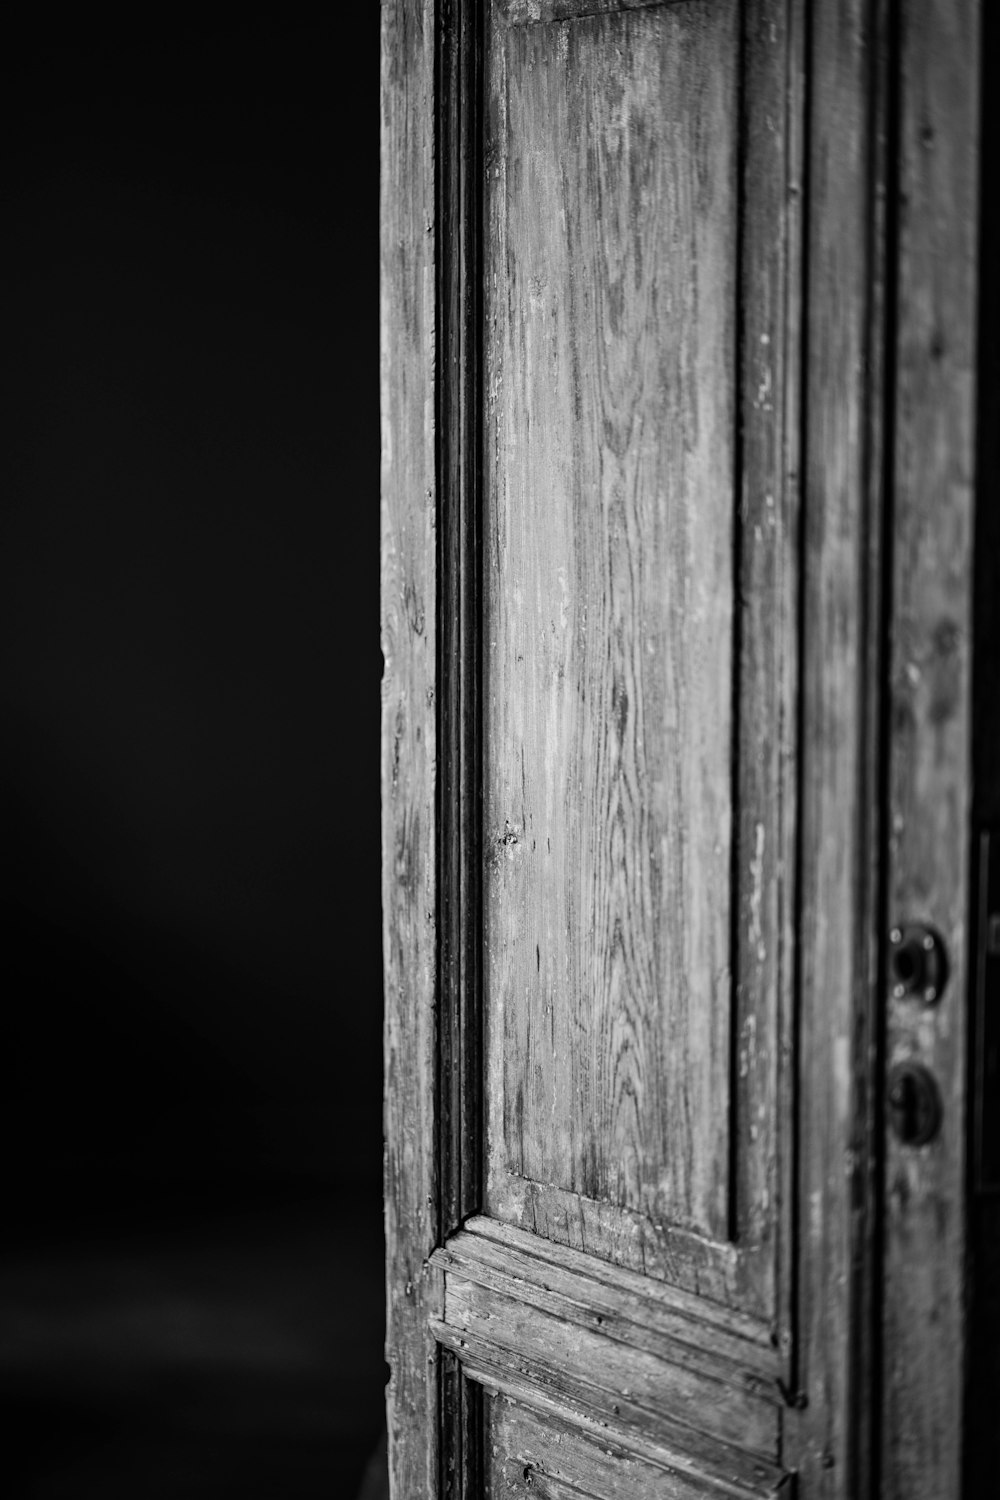 a close up of a wood door